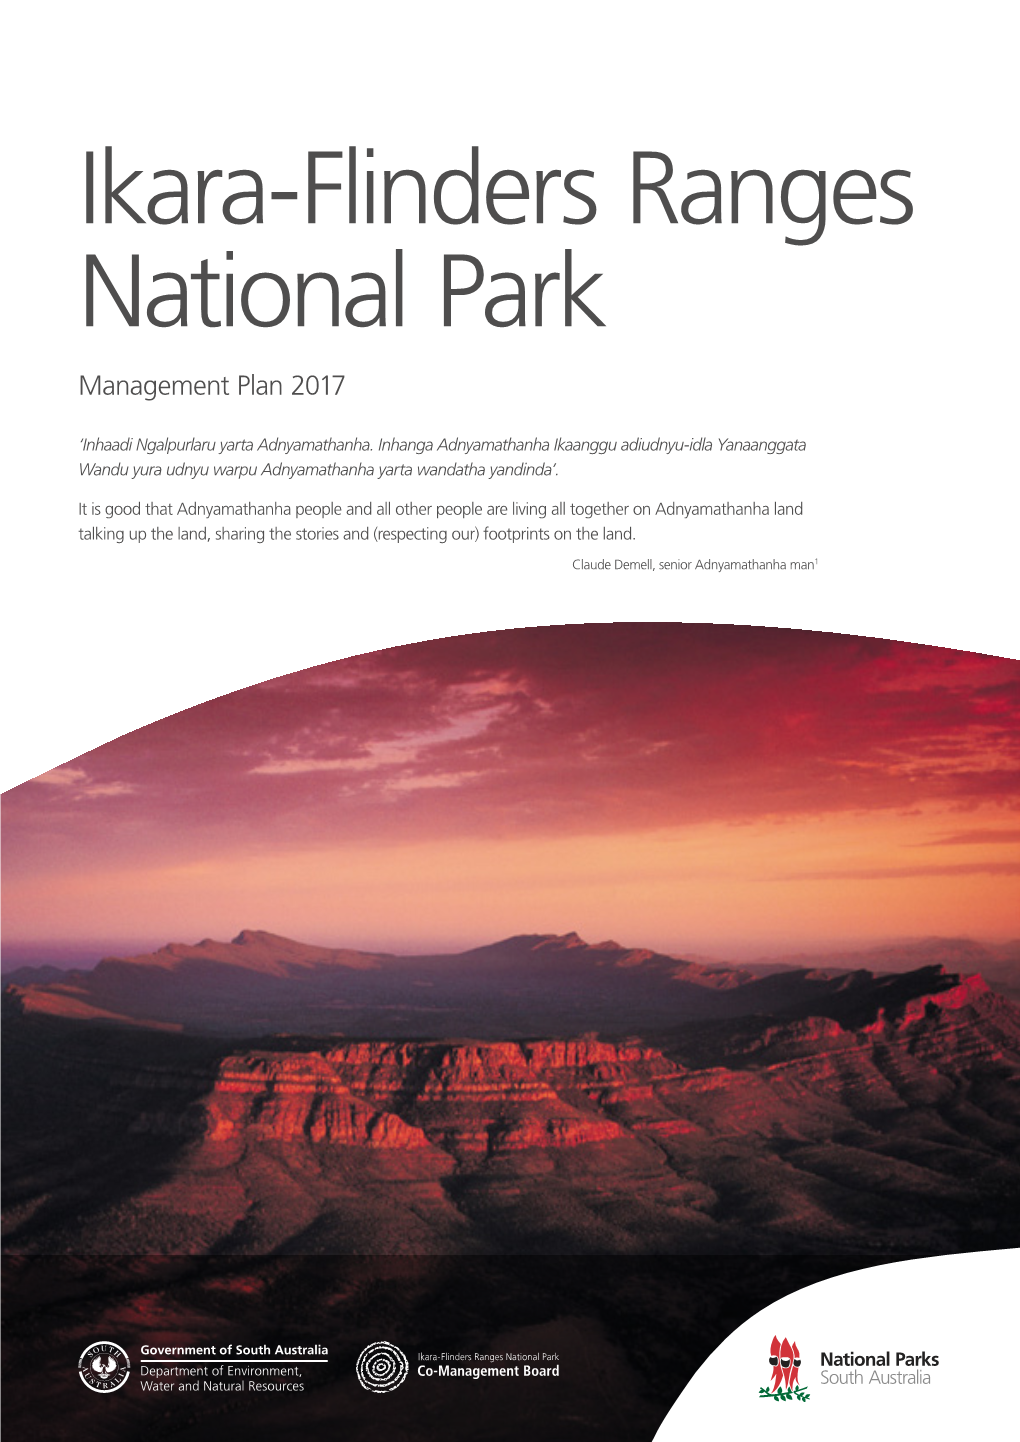 Ikara-Flinders Ranges National Park Management Plan 2017